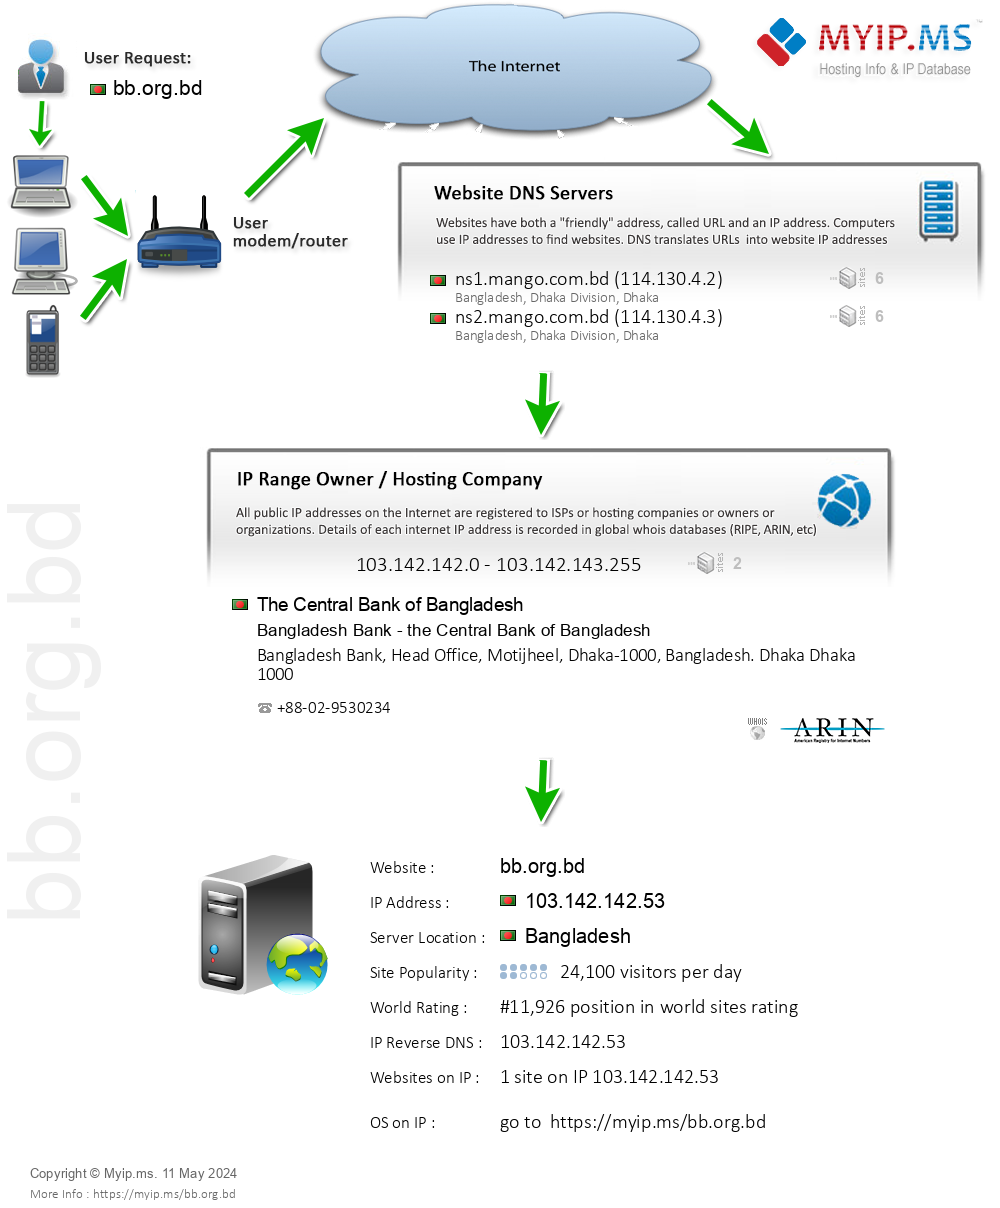 Bb.org.bd - Website Hosting Visual IP Diagram